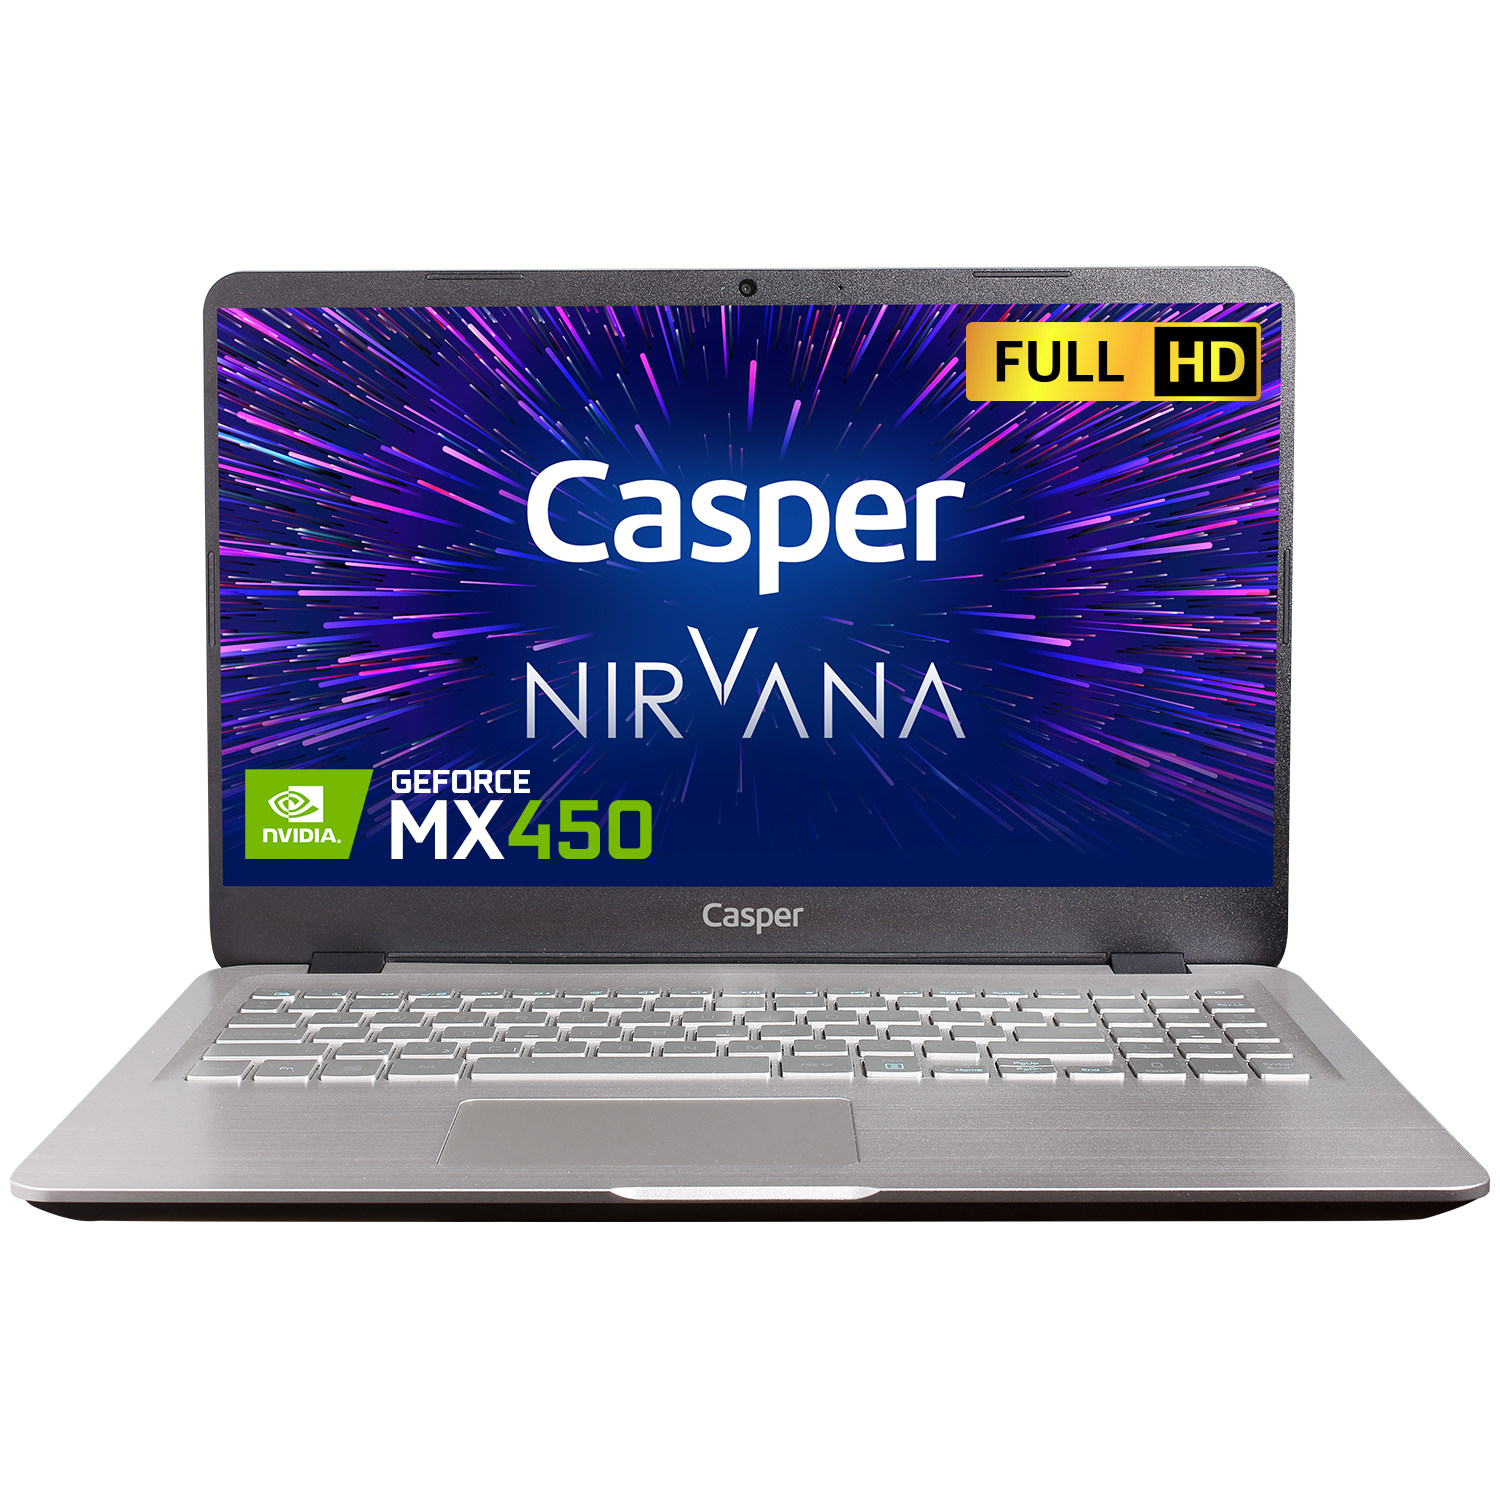 Casper Nirvana S500.1135-8V50X-G-F i5-1135G7 8 GB 500 GB NVME SSD MX450 15.6" Dos Dizüstü Bilgisayar